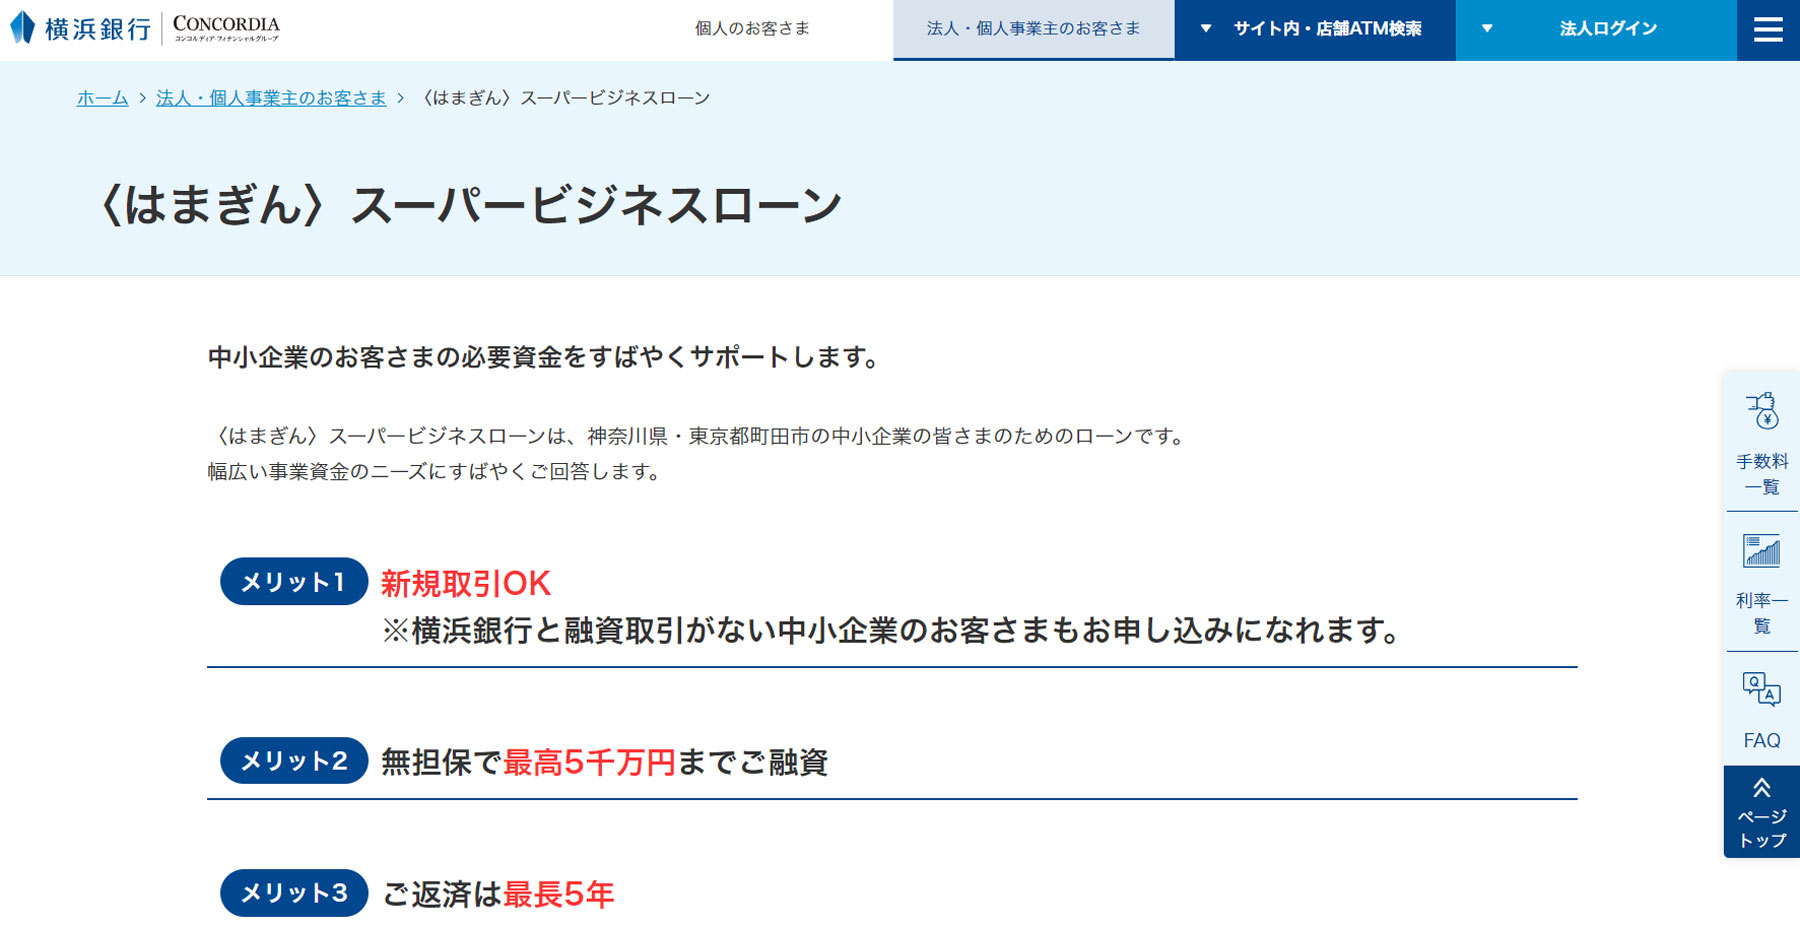 横浜銀行 〈はまぎん〉スーパービジネスローン公式Webサイト